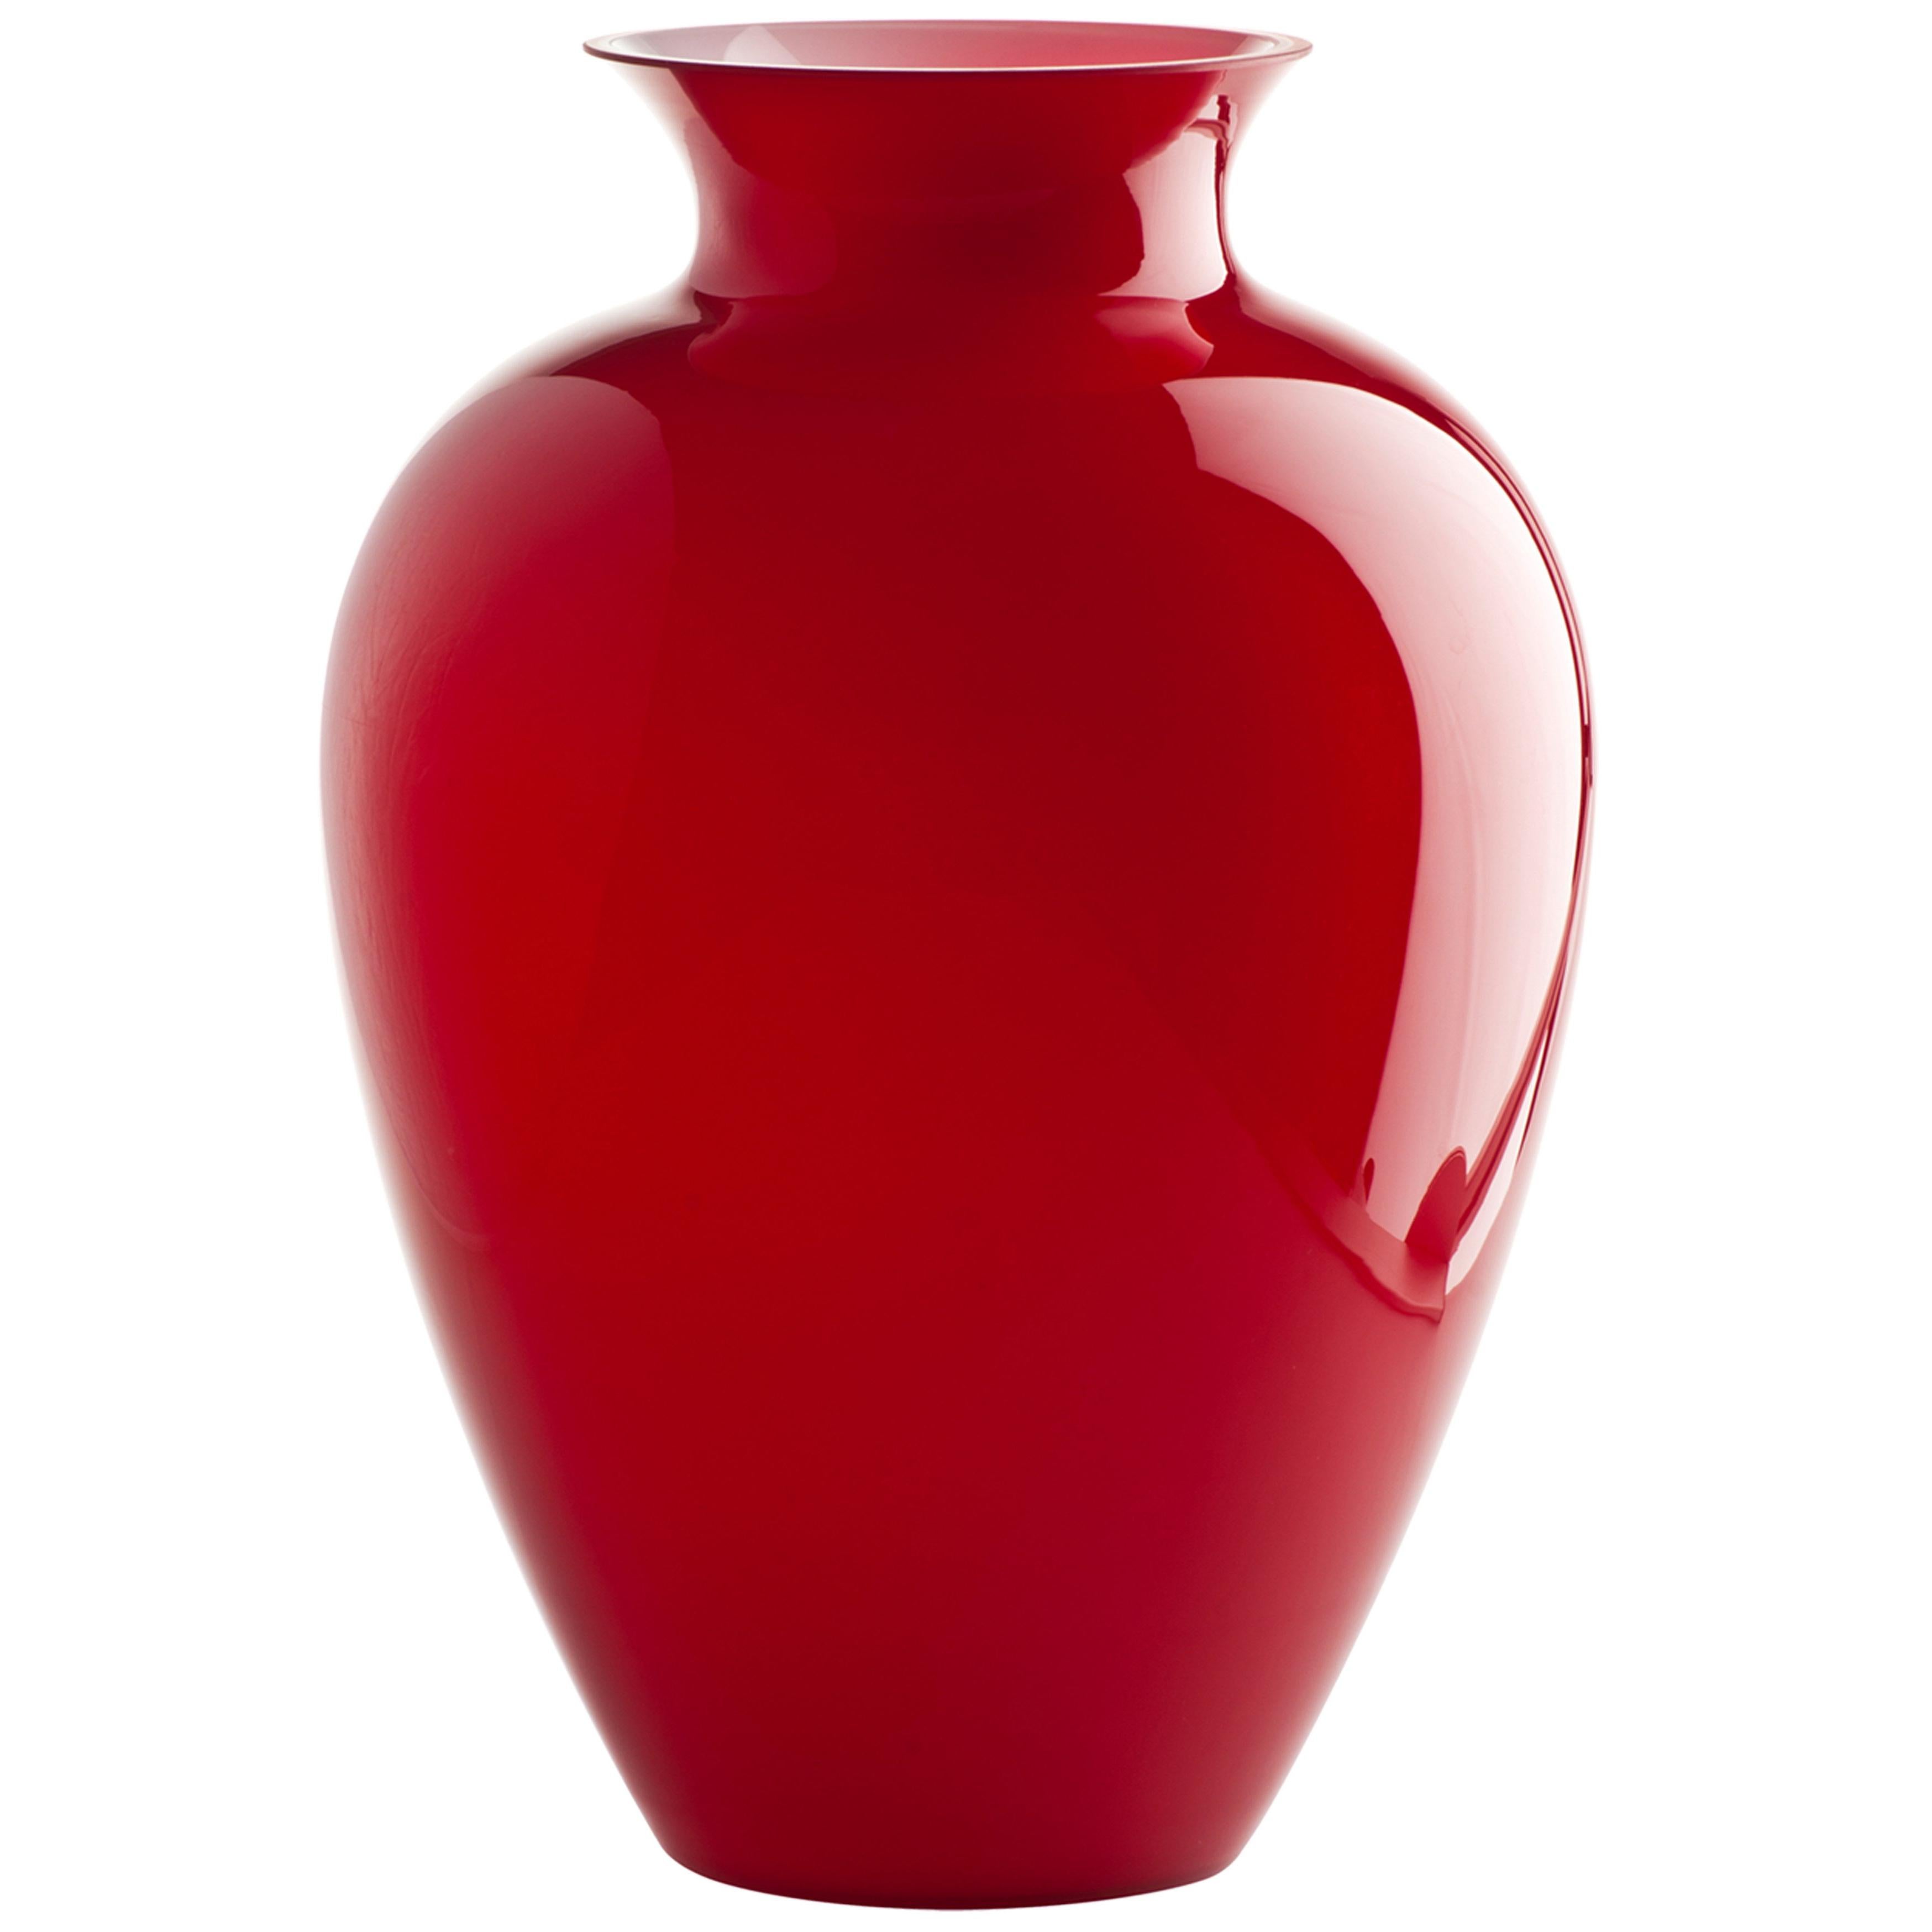 Labuan Glass Vase in Red Milk White inside by Venini